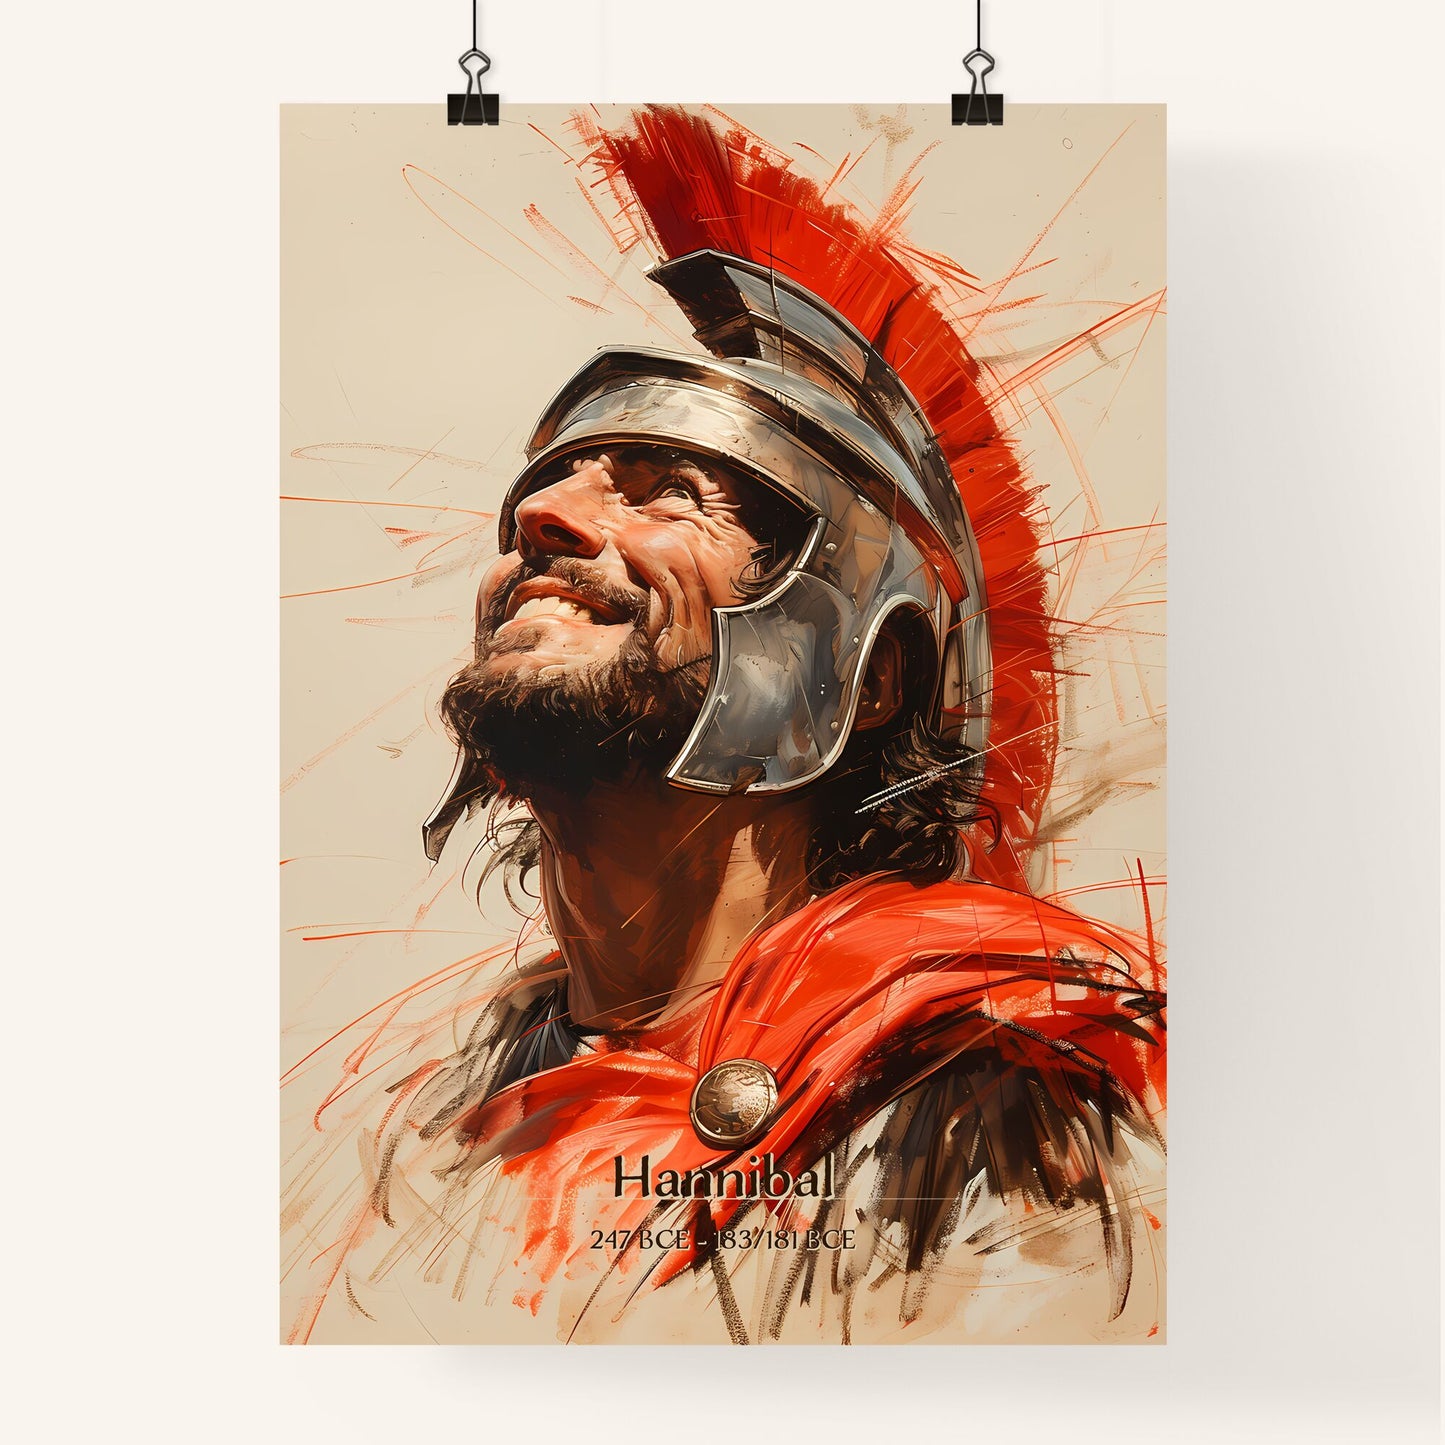 Hannibal, 247 BCE - 183/181 BCE, A Poster of a man in a helmet Default Title